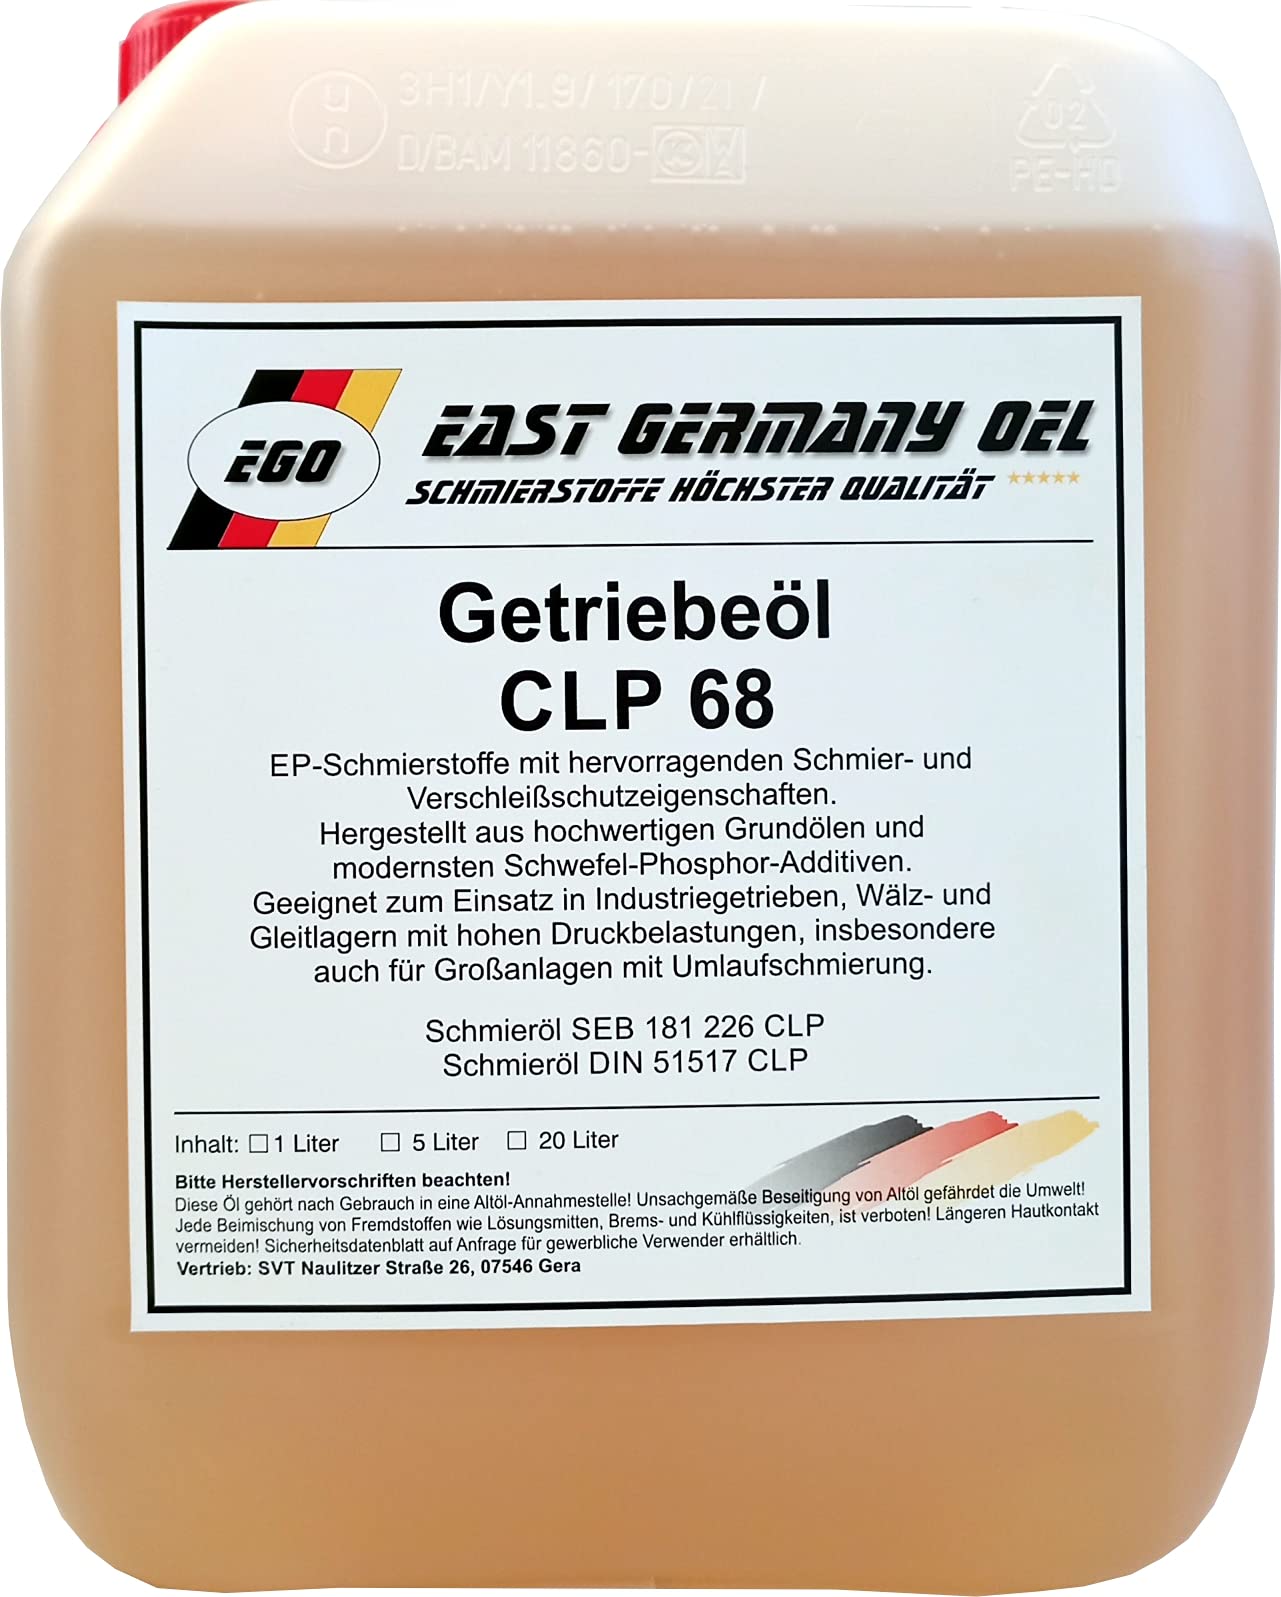 Getriebeöl CLP 68 Kanister 5 Liter von East Germany OIL